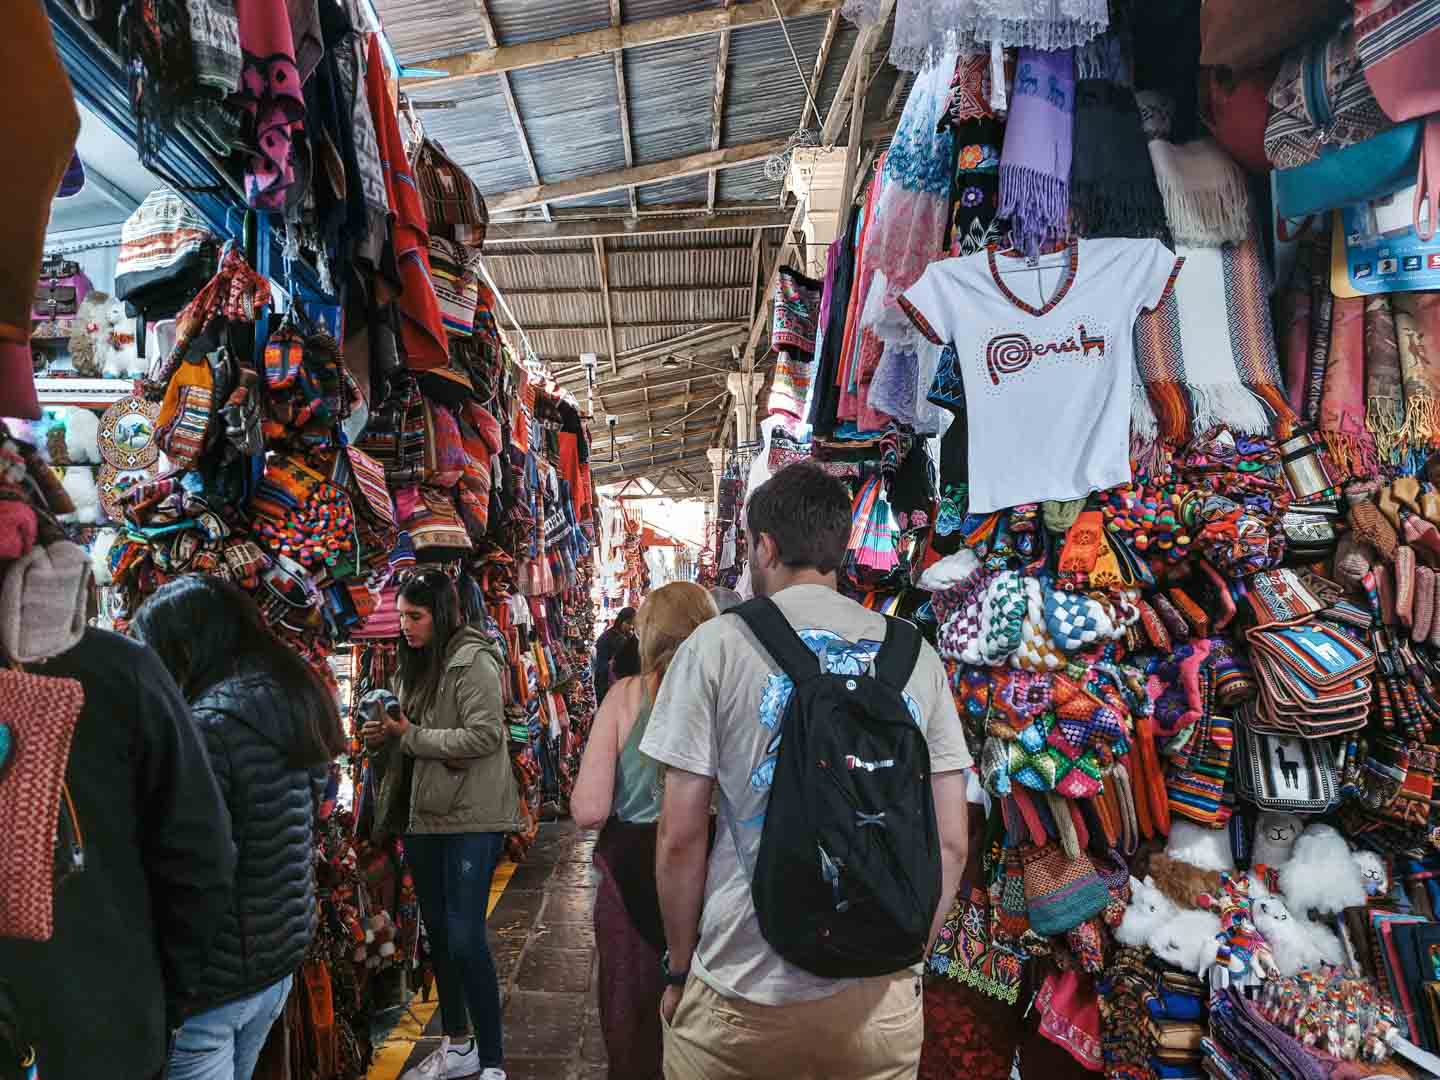 San Pedro Central Market in Cusco